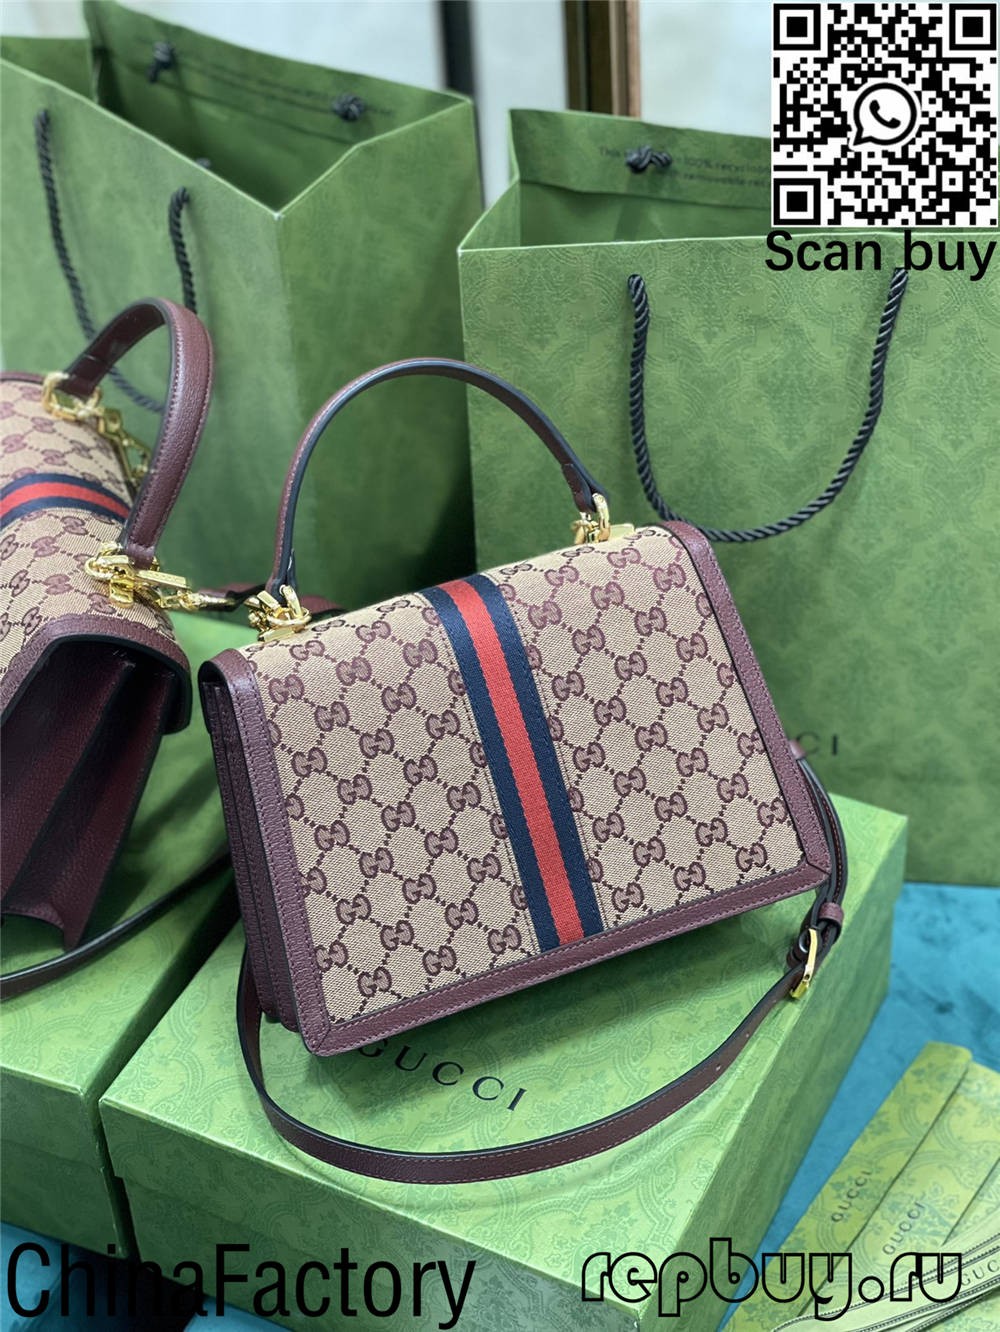 Dem Gucci seng Top 12 Bescht Replika Poschen ze kafen (2022 aktualiséiert) - Bescht Qualitéit Fake Louis Vuitton Bag Online Store, Replica Designer Bag ru